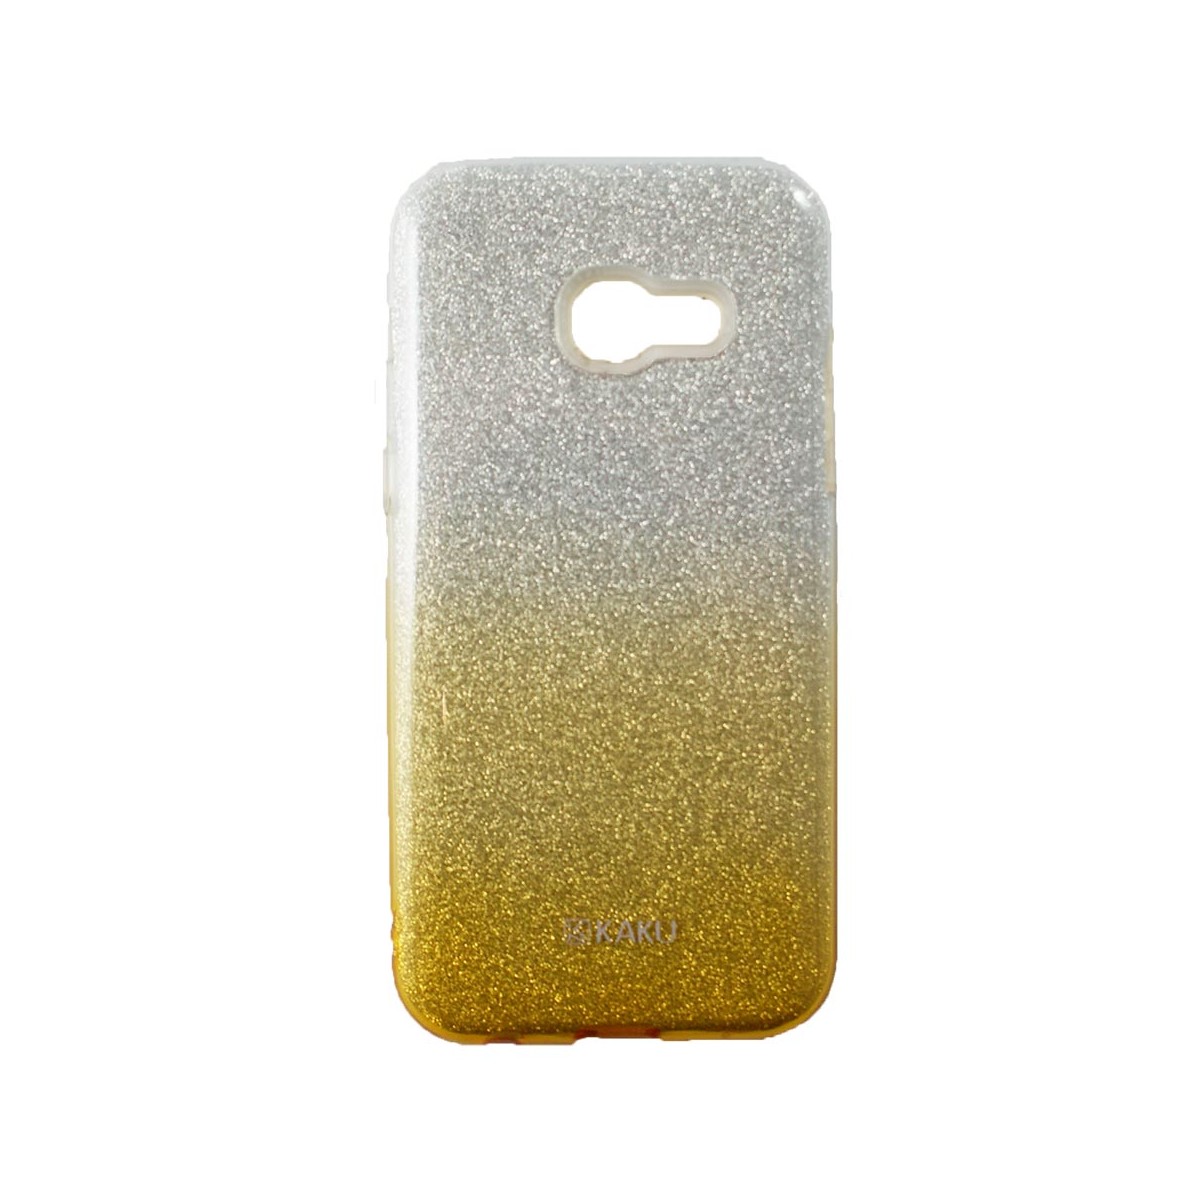 Coque Galaxy A5 (2017) à paillettes dorées et argentées - Kaku